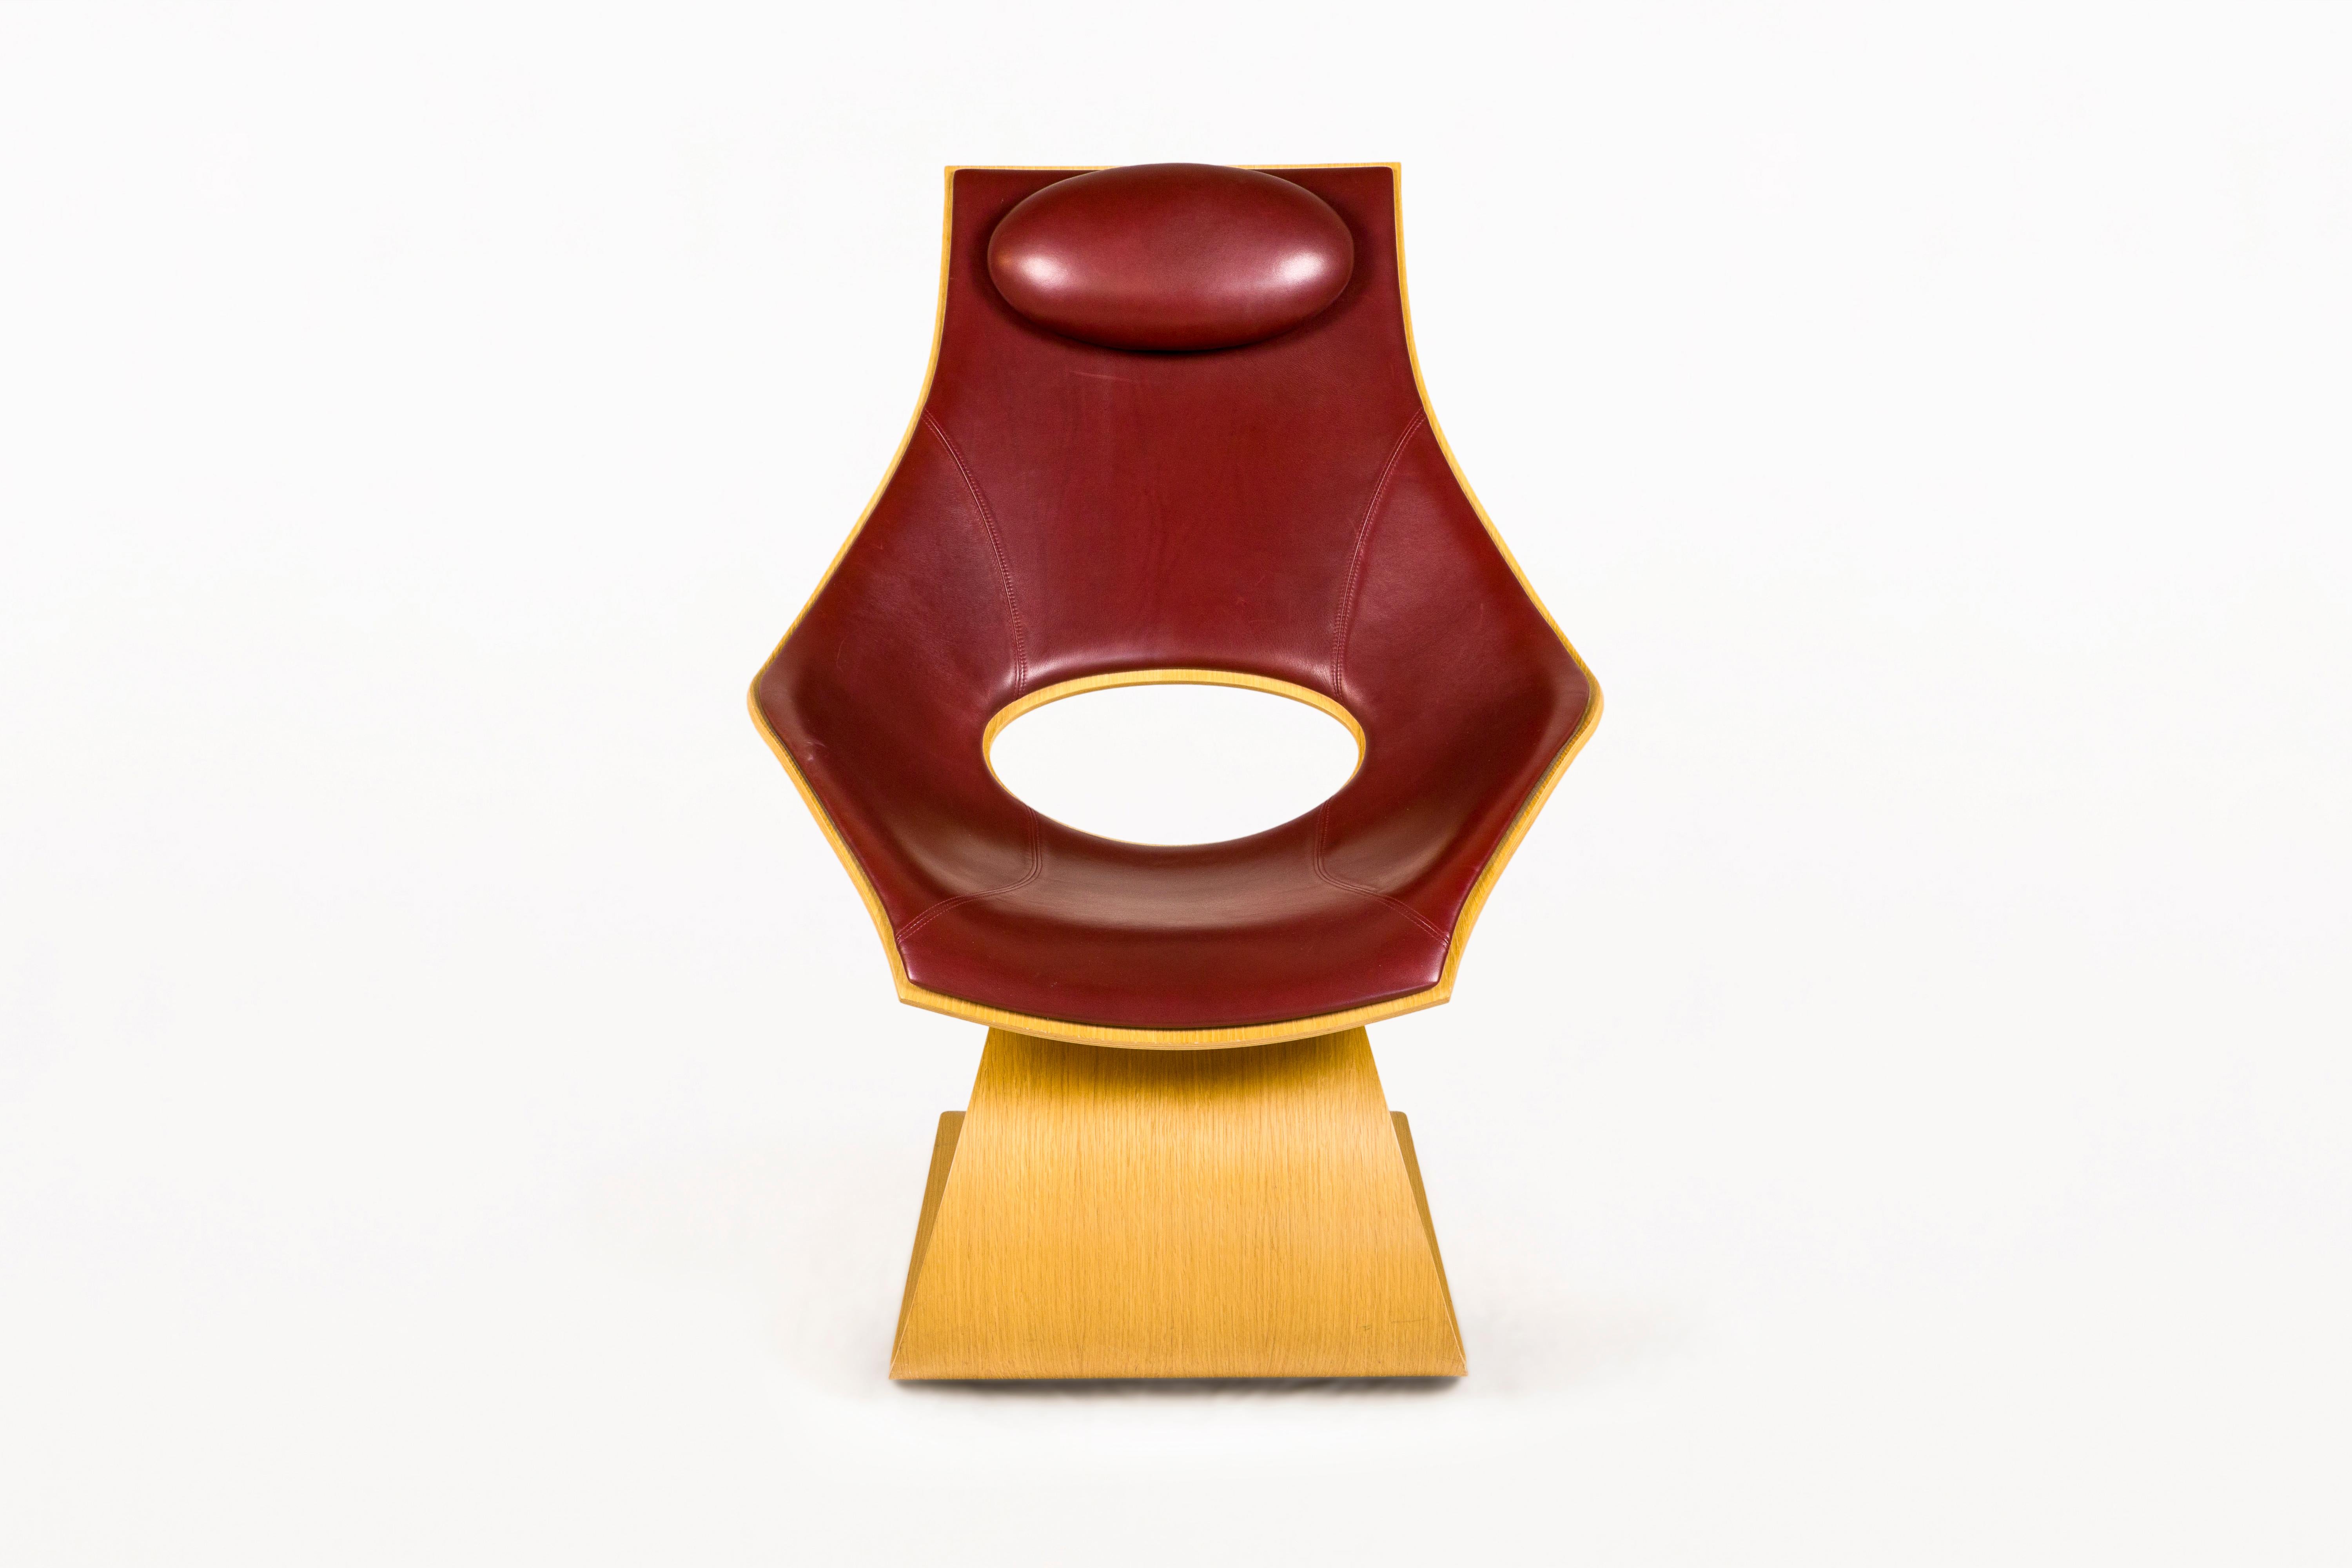 BESCHREIBUNG: Stuhl aus Eichenfurnier,  mit Lederbezug und einem kleinen, entspannenden Nackenkissen.  Sehr dekoratives Stück.
Entworfen von Ando Tadao für Carl Hansen & Son.
Nummeriert und signiert vom Künstler auf der Eintrittskarte.

ZUSTAND: